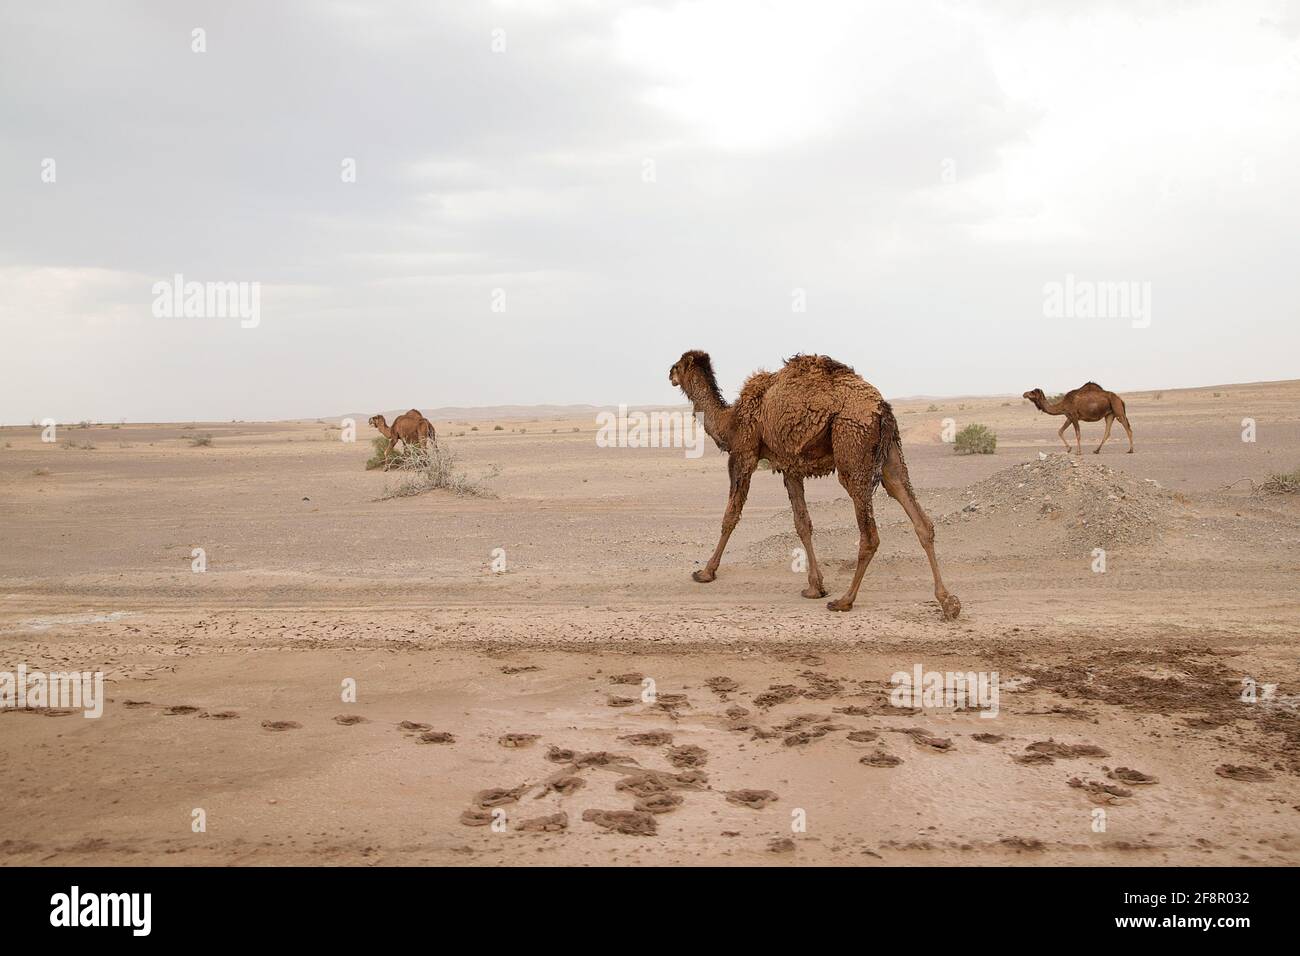 Kamele in der Wüste, Iran Foto Stock